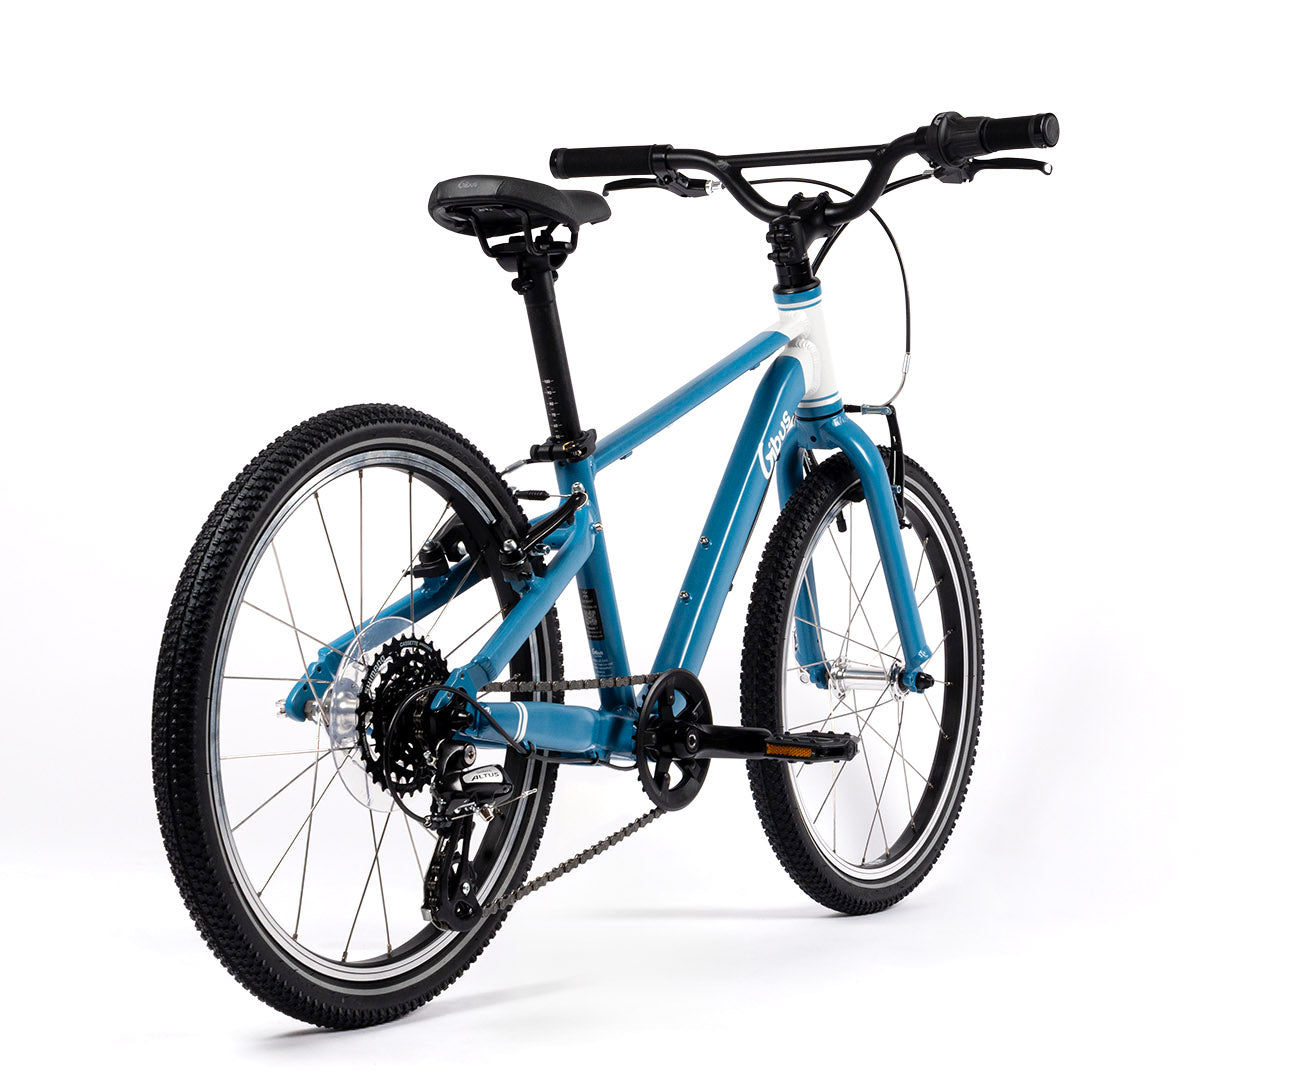 vélo 20 pouces bleu gibus cycles - vue 3/4 arrière